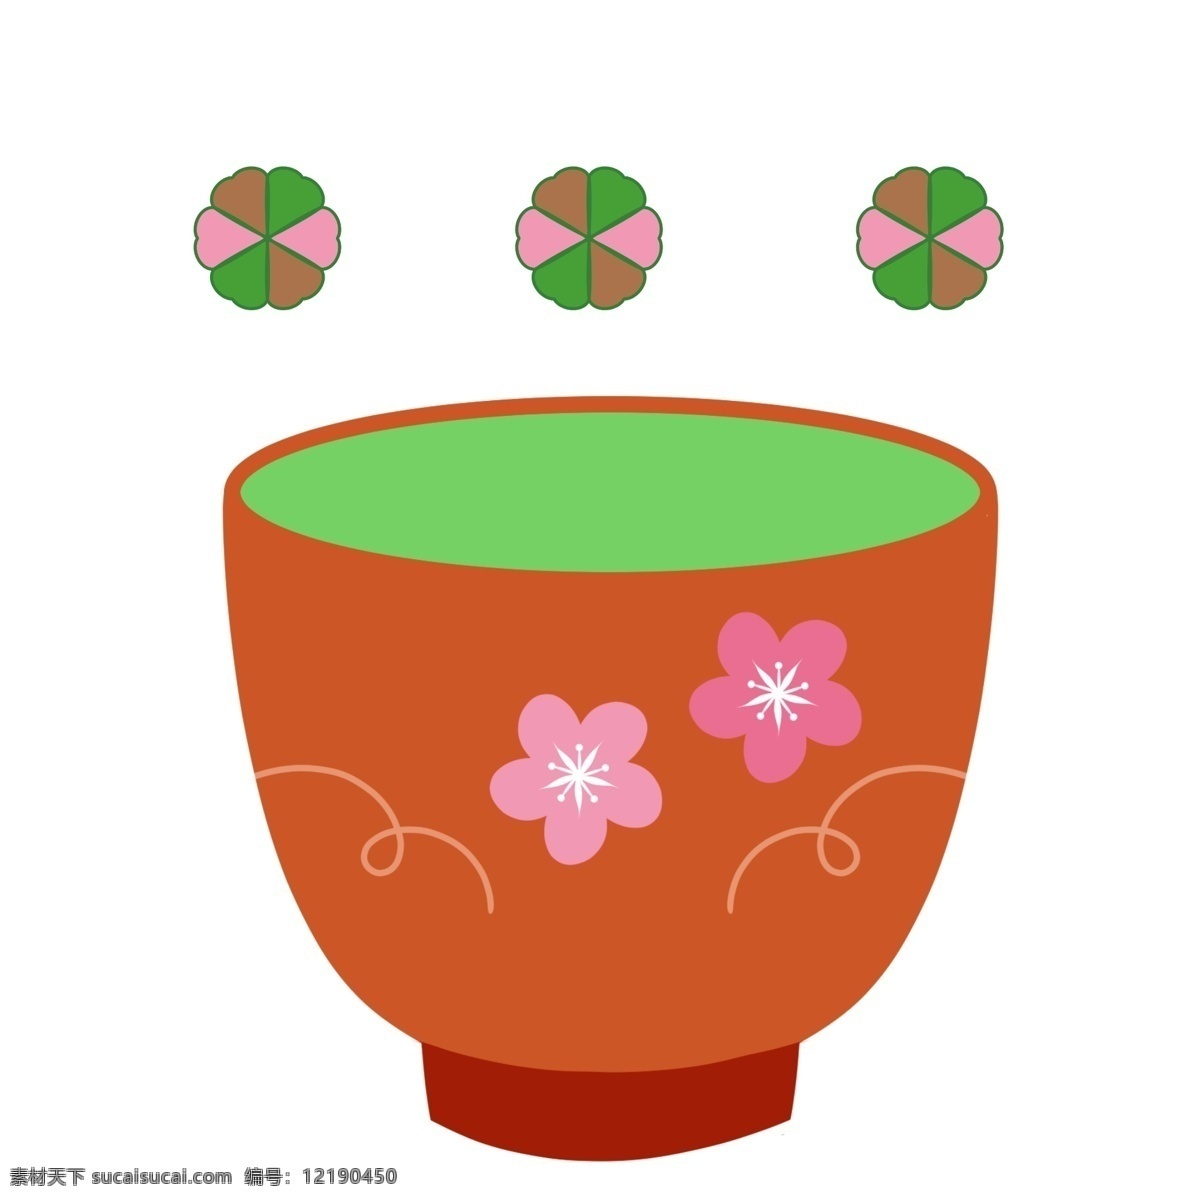 红色 寿司 茶 插画 红色的寿司茶 漂亮的寿司茶 创意寿司茶 红色的小花 营养寿司茶 寿司茶插画